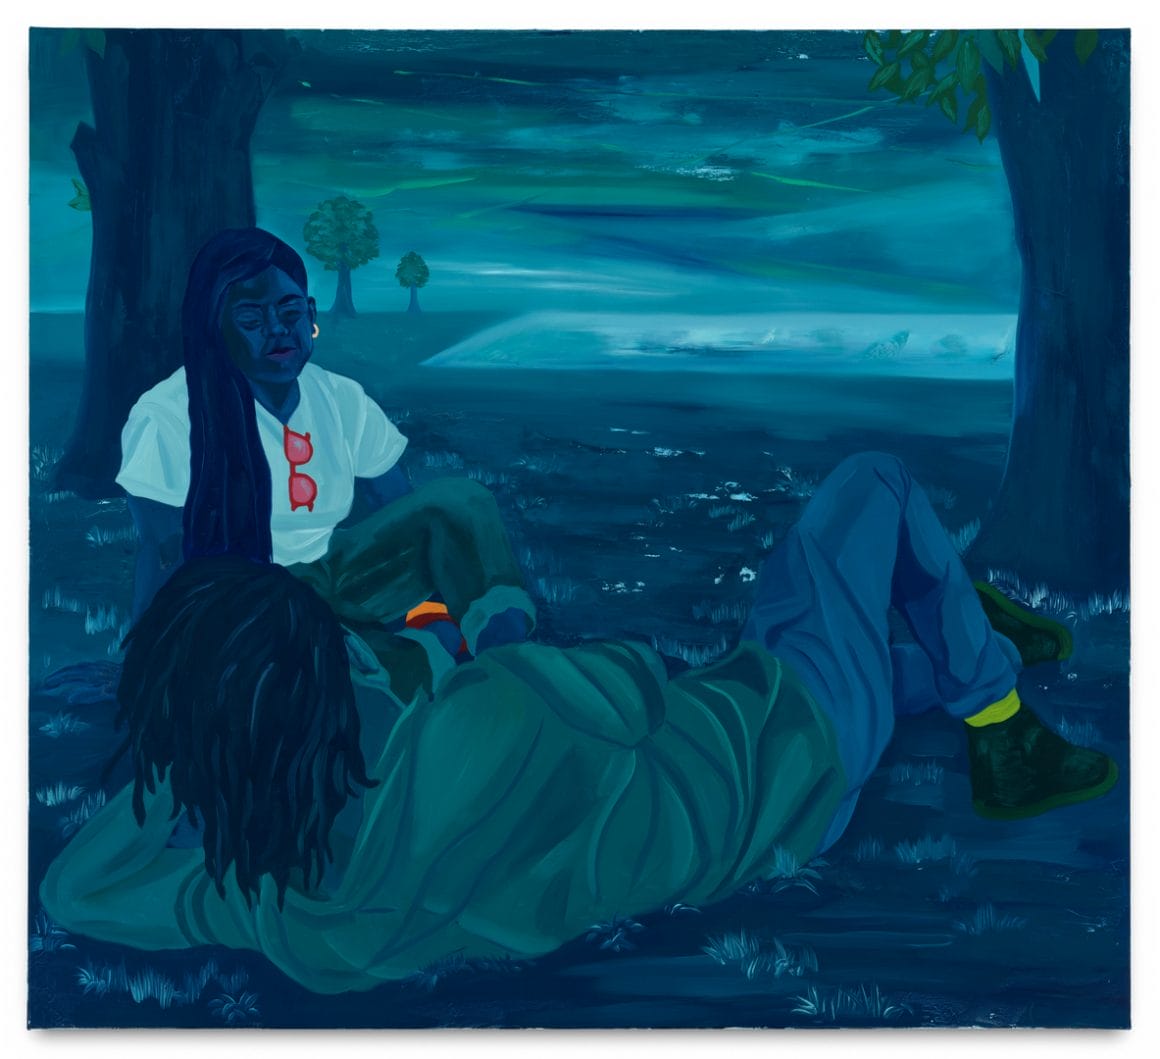 Paysage de parc, ambiance bleu. Un homme est allongé dans l'herbe et fixe une femme noire, assise en tailleurs près de lui.